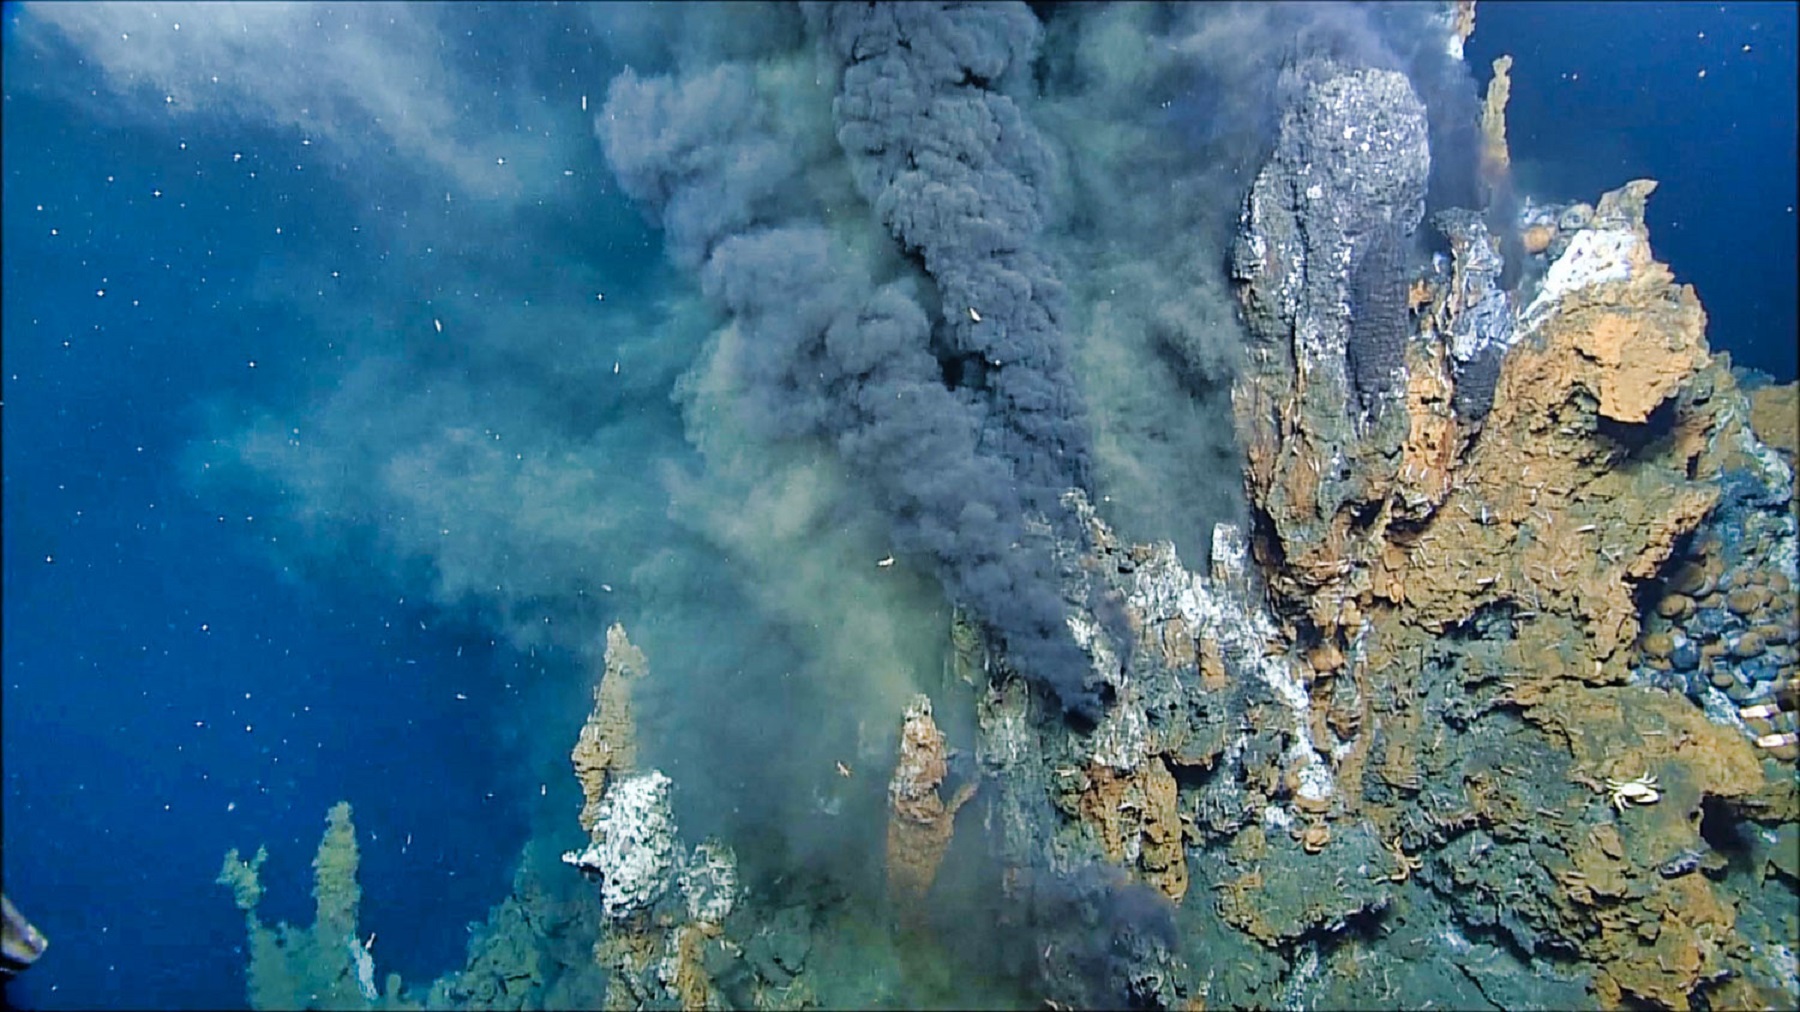 Les amas sulfurés se forment au niveau des sources hydrothermales, au fond de l'océan © USGS, domaine public